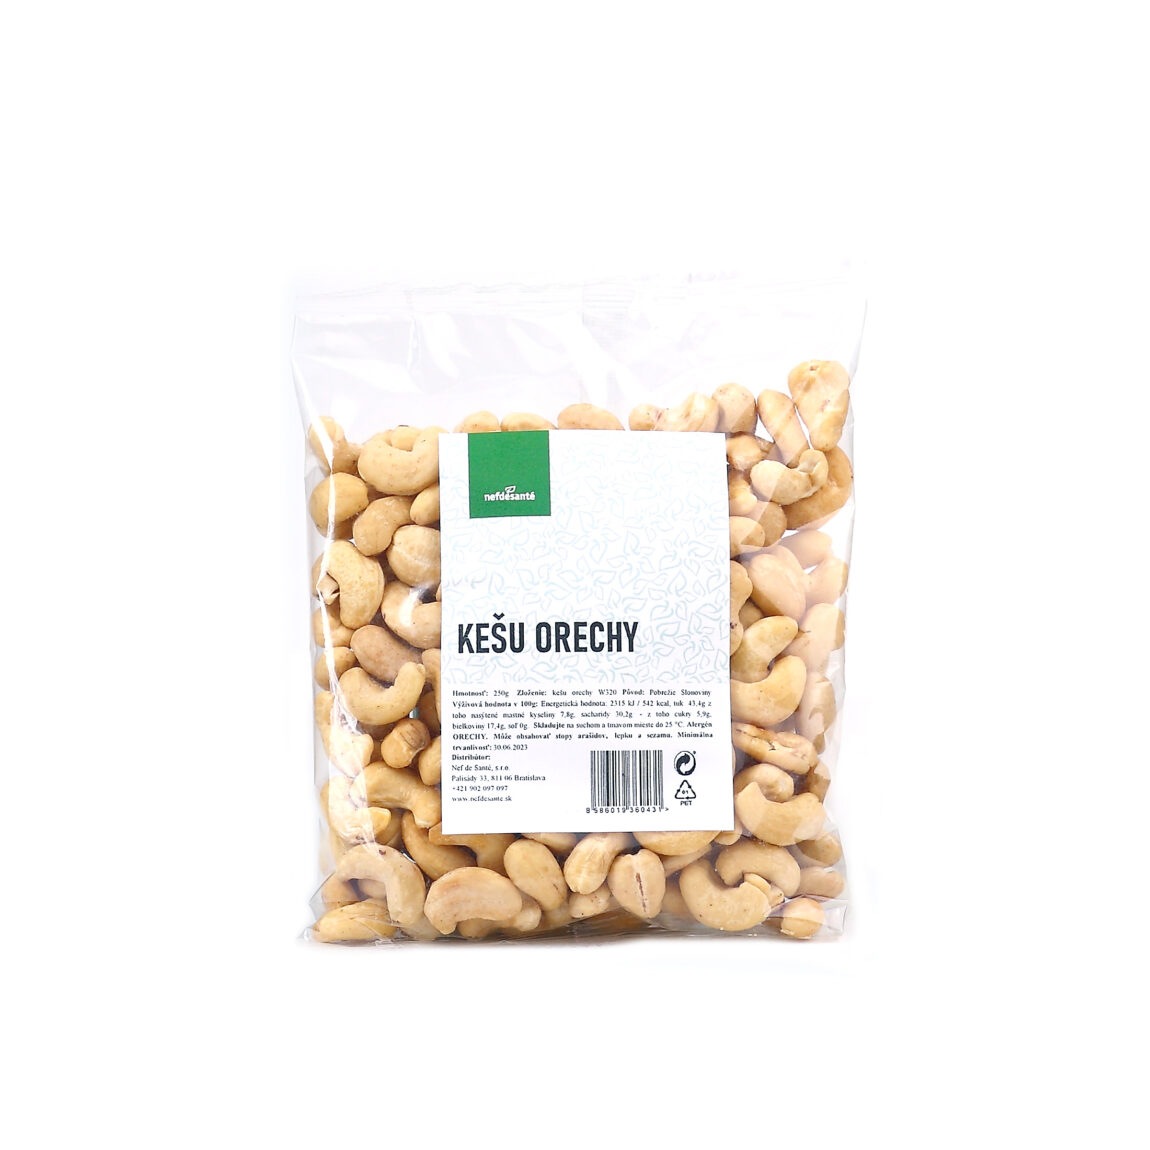 Nefdesante Kešu ořechy 250 g 250 g